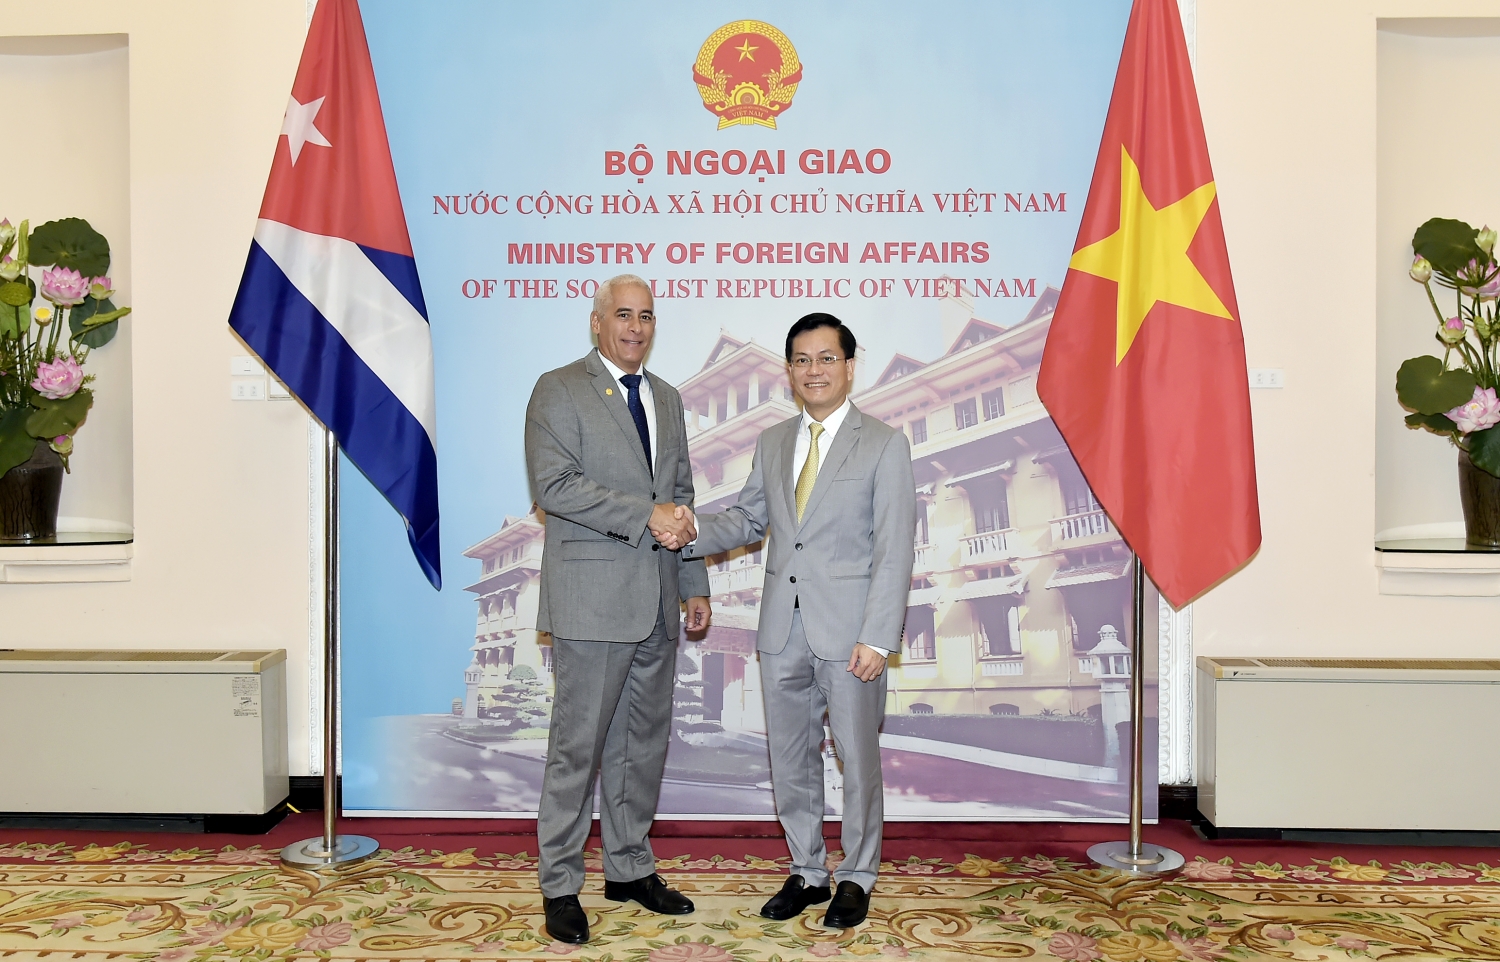 Tham khảo chính trị lần thứ VII giữa Bộ Ngoại giao Việt Nam và Bộ Ngoại giao Cuba